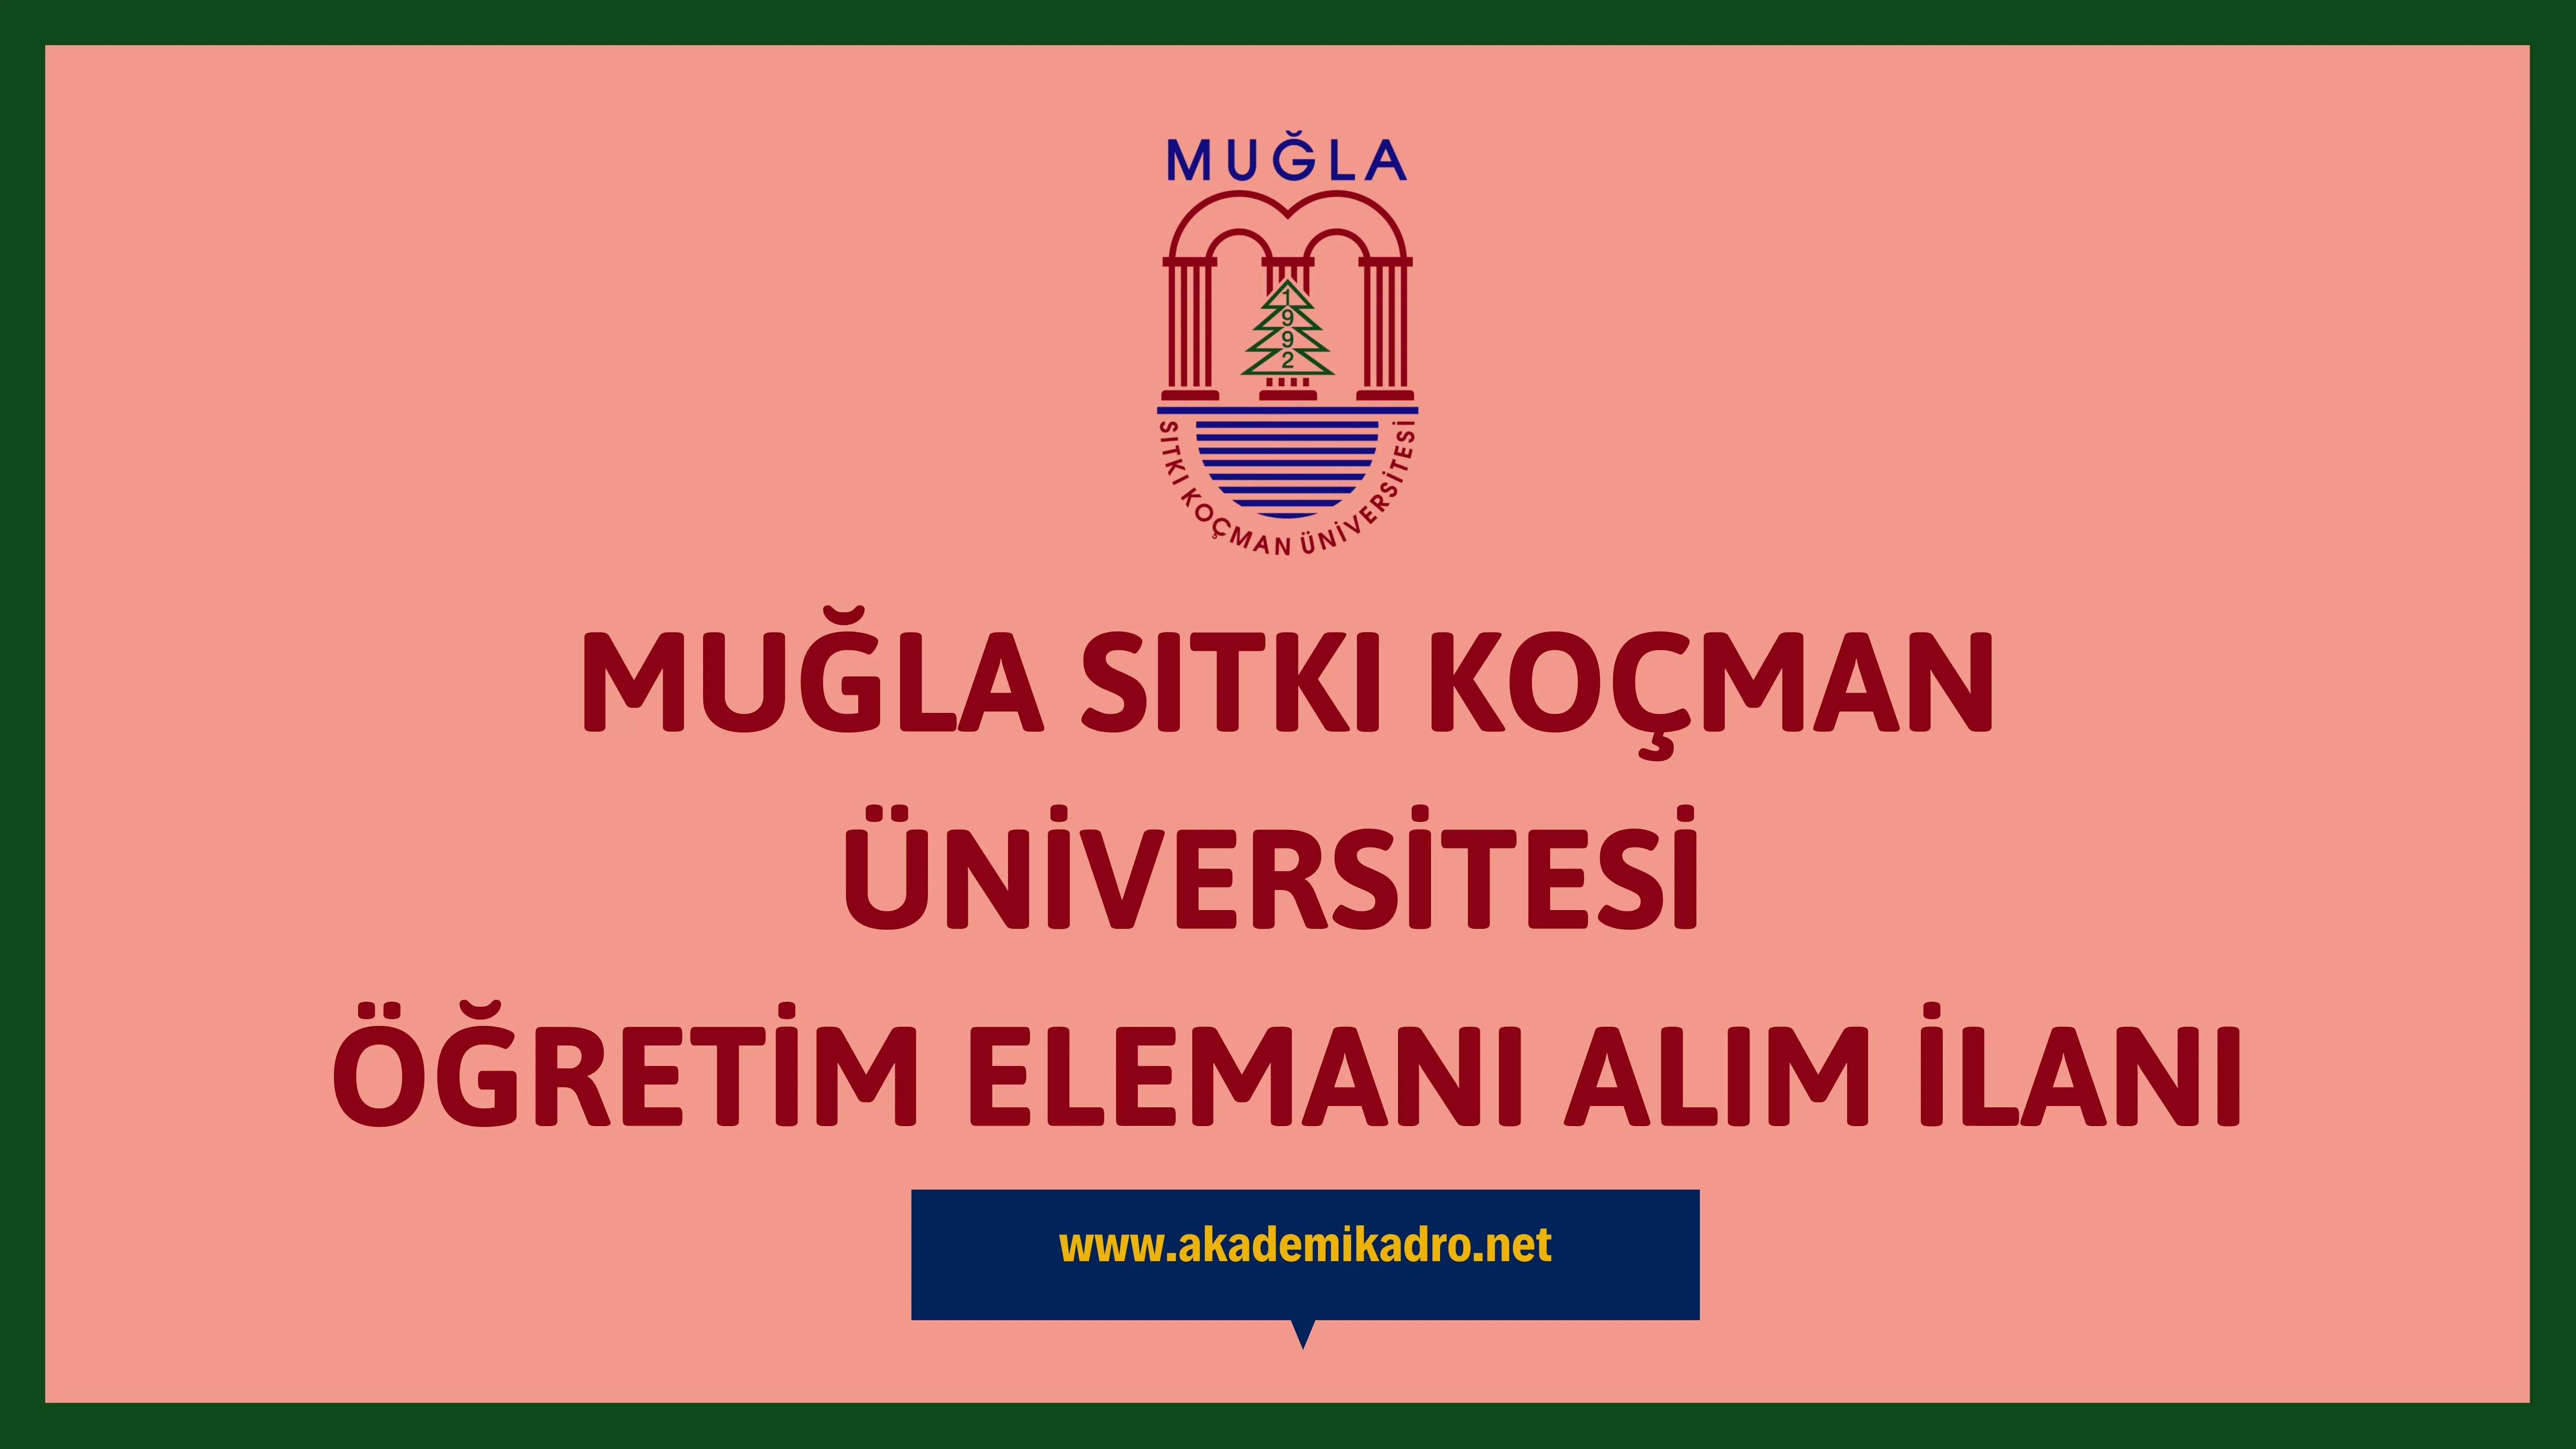 Muğla Stıkı Koçman Üniversitesi 5 Araştırma Görevlisi, 1 Öğretim Görevlisi ve 56 Öğretim üyesi olmak üzere 62 Öğretim elemanı alacak. Son başvuru tarihi 